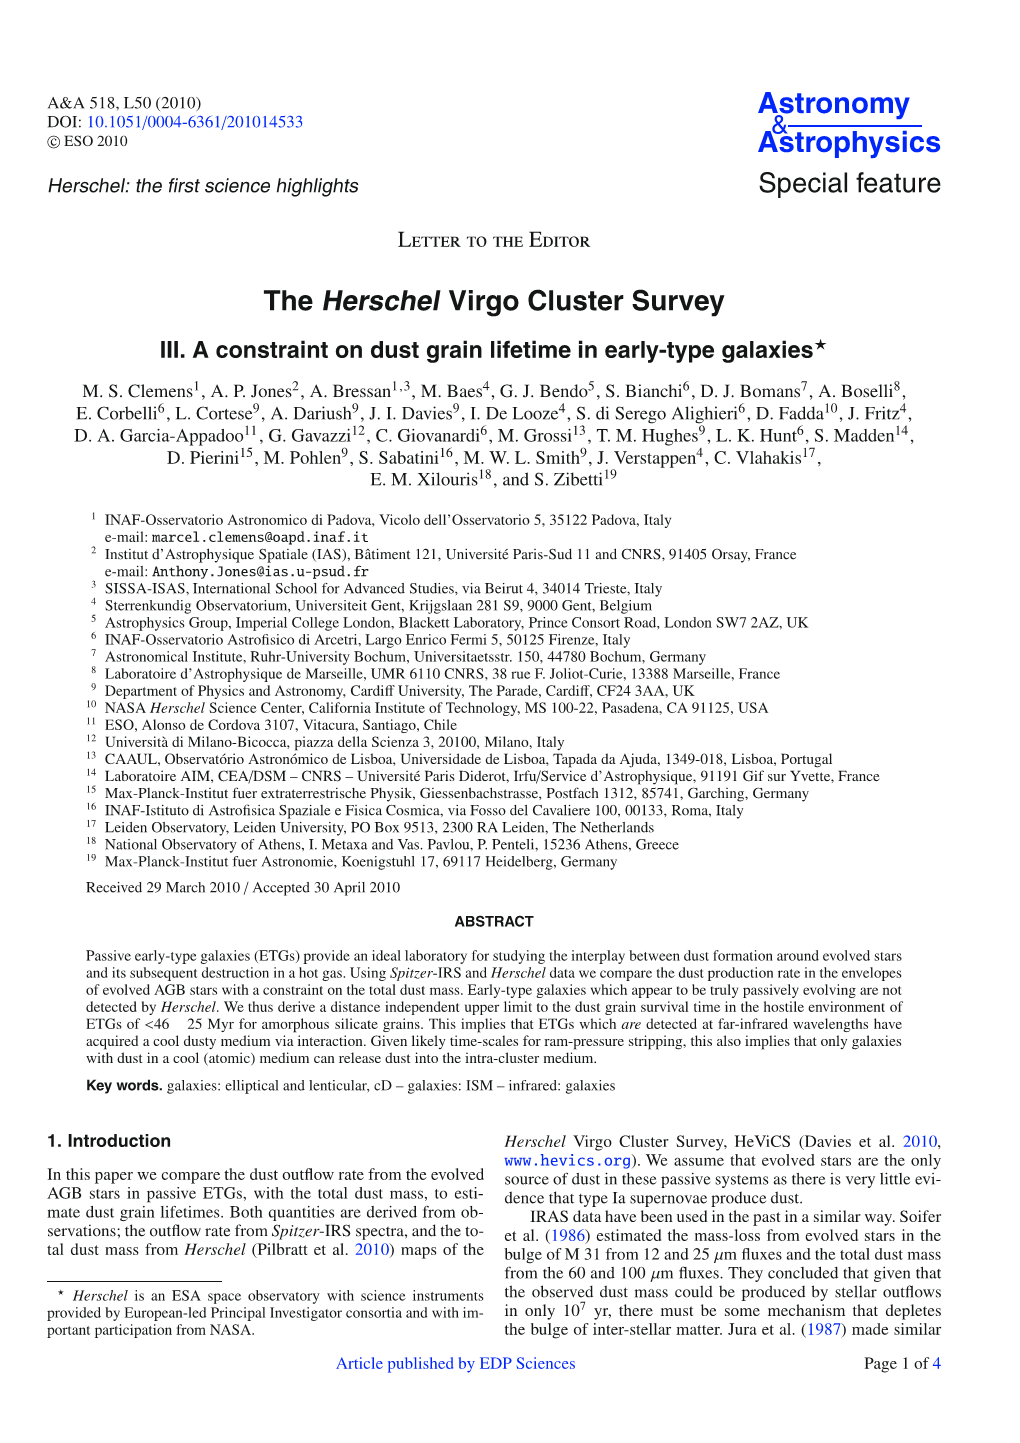 The Herschel Virgo Cluster Survey*